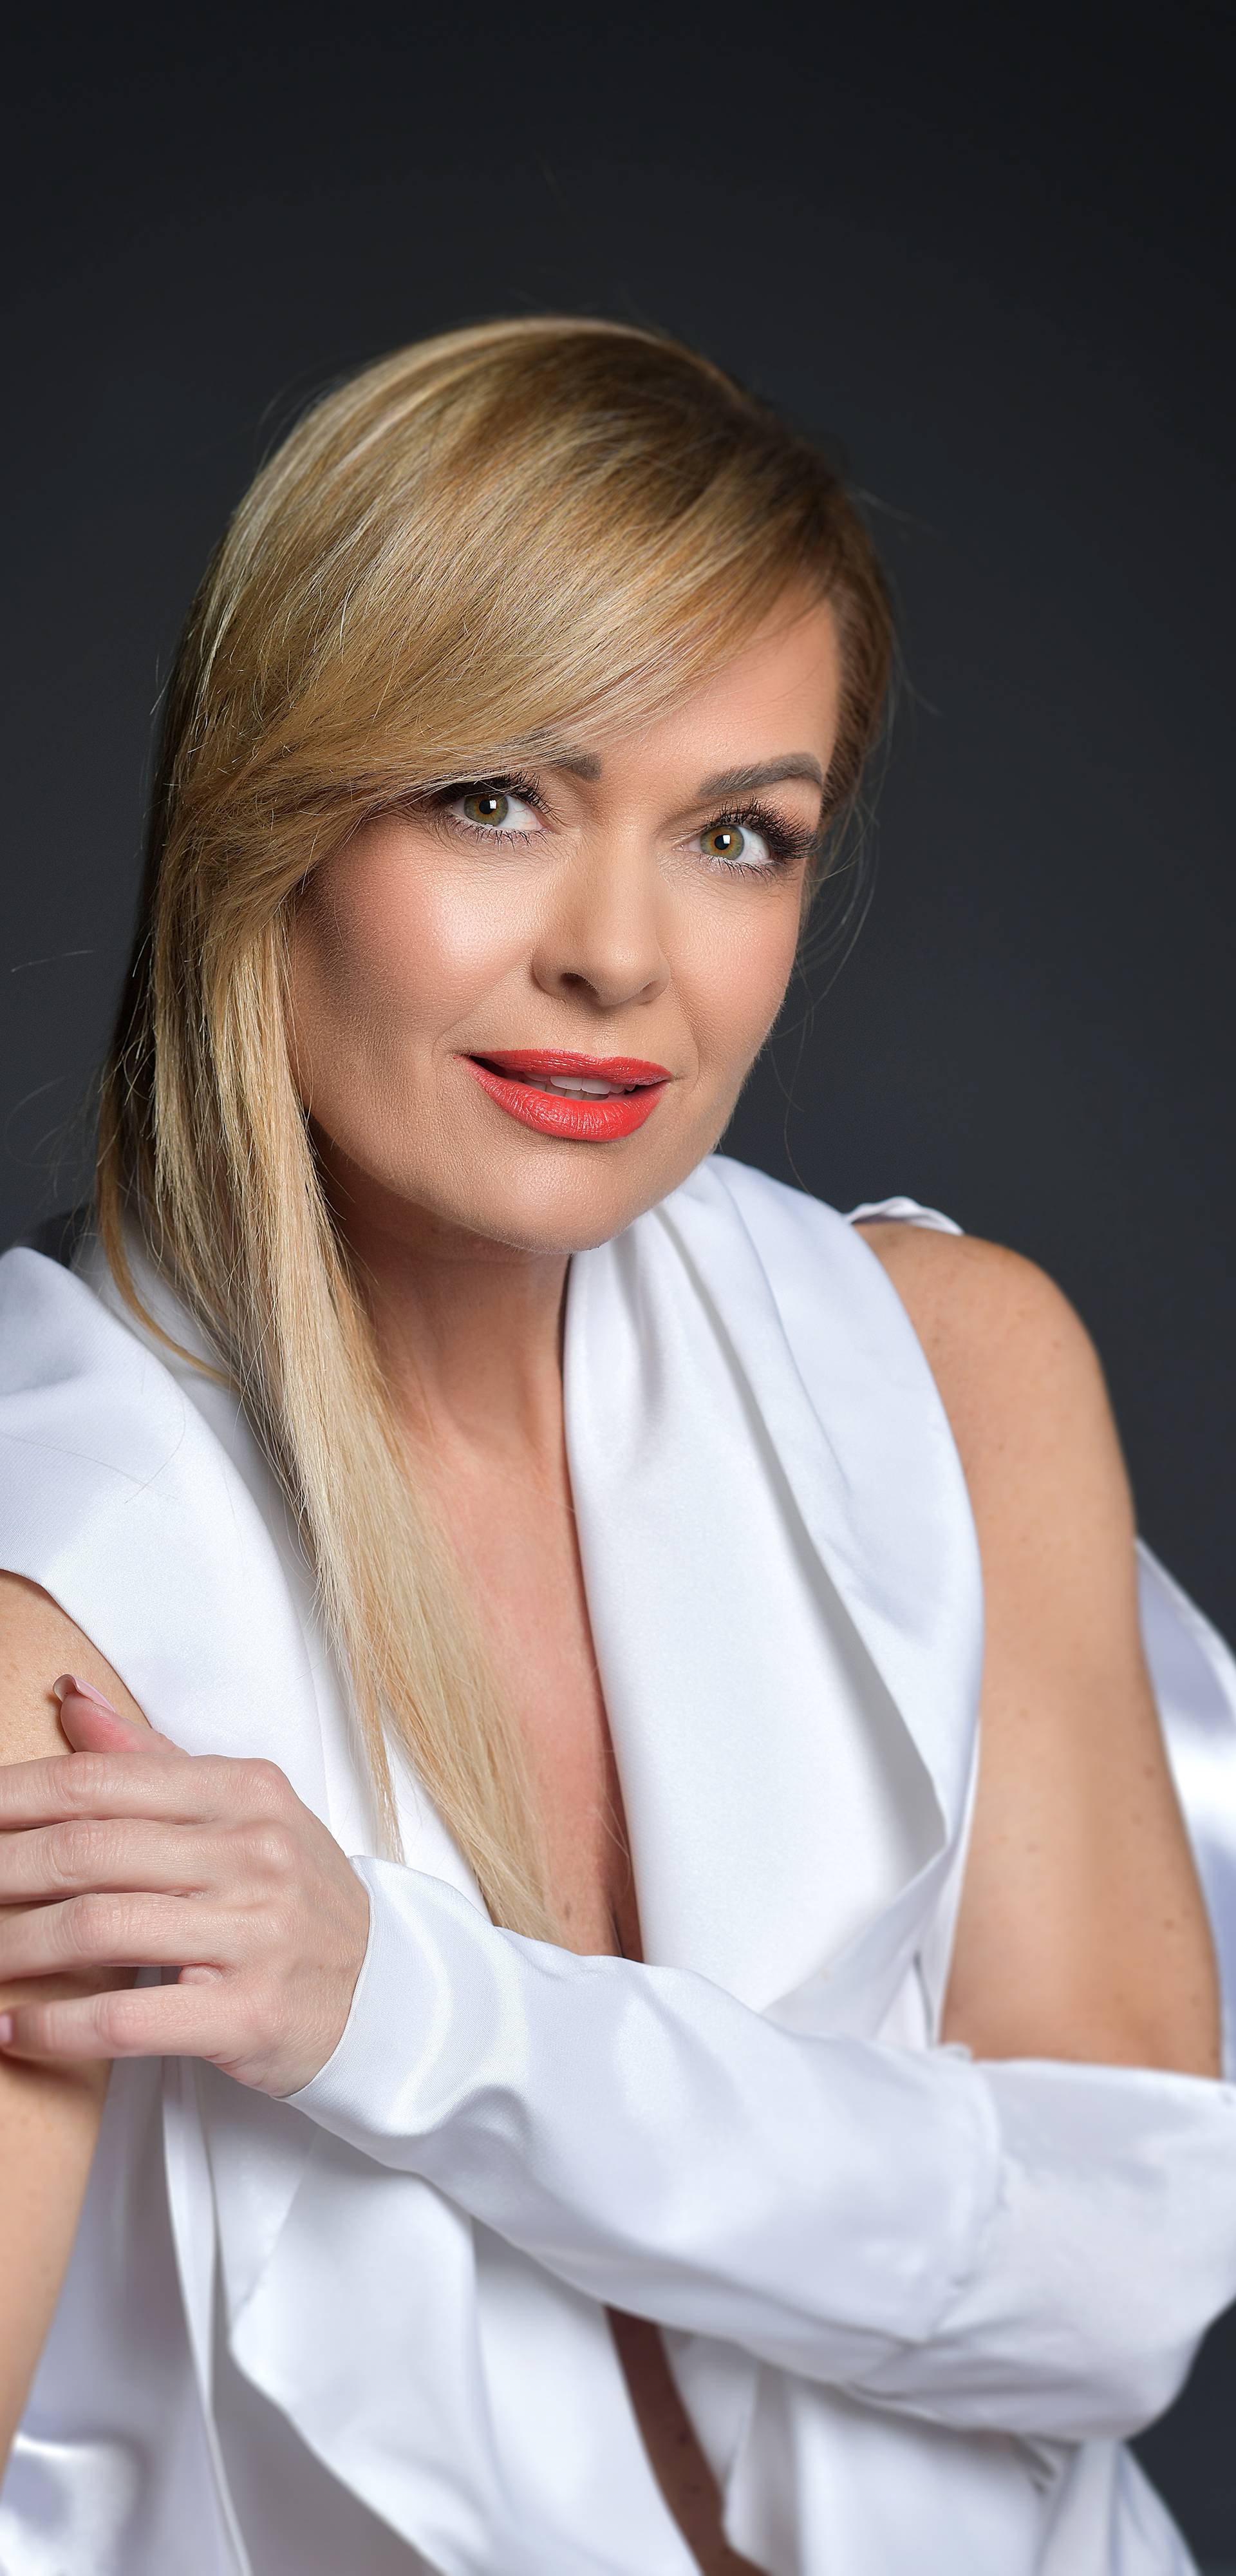 Zagreb:  Pjevačica i televizijska voditeljica Renata Končić Minea